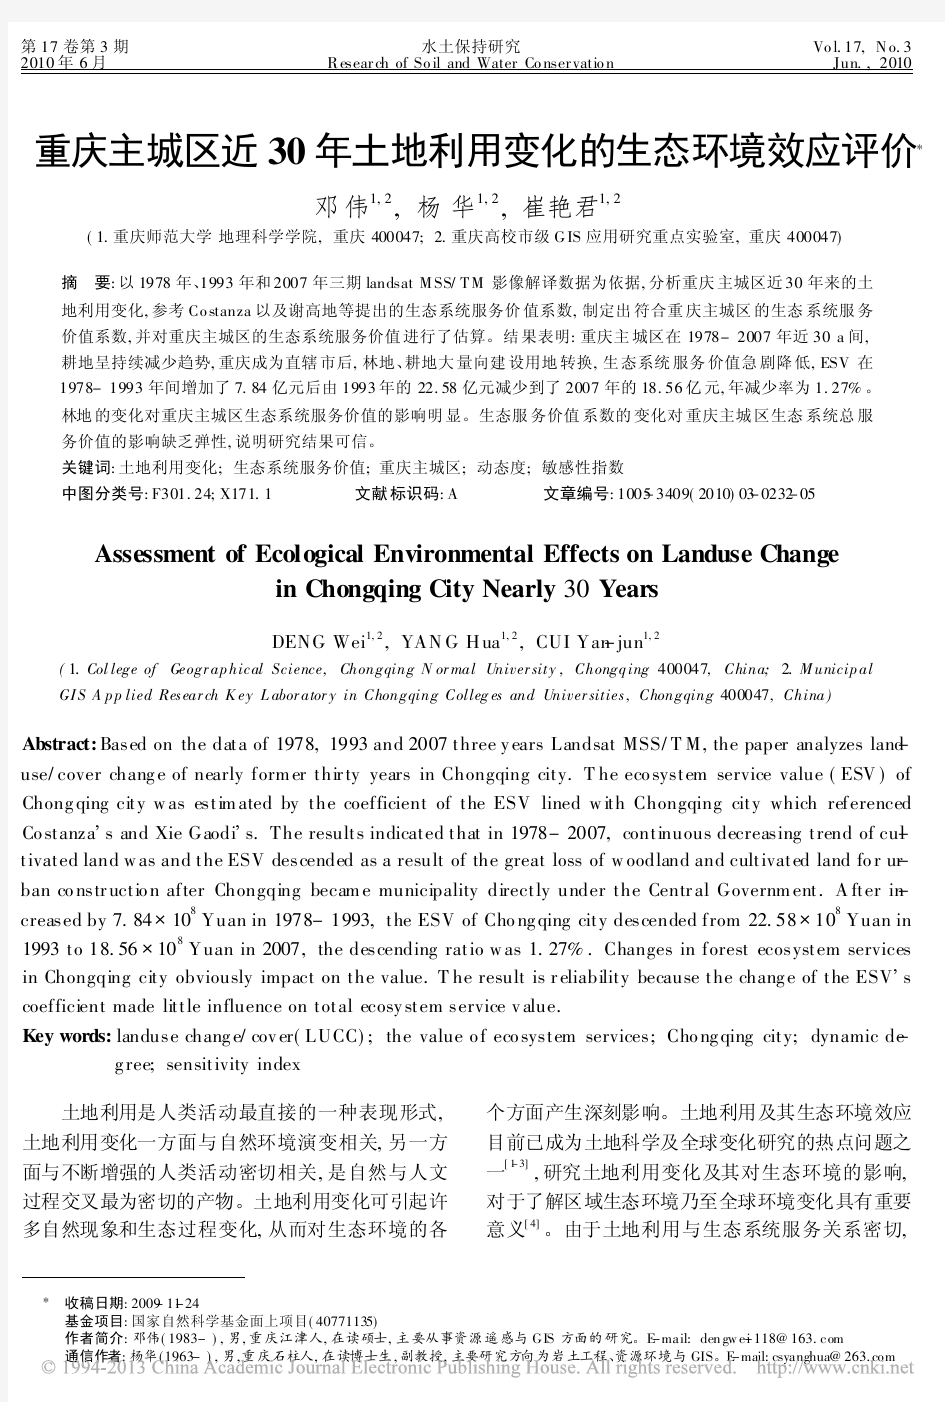 重庆主城区近30年土地利用变化的生态环境效应评价